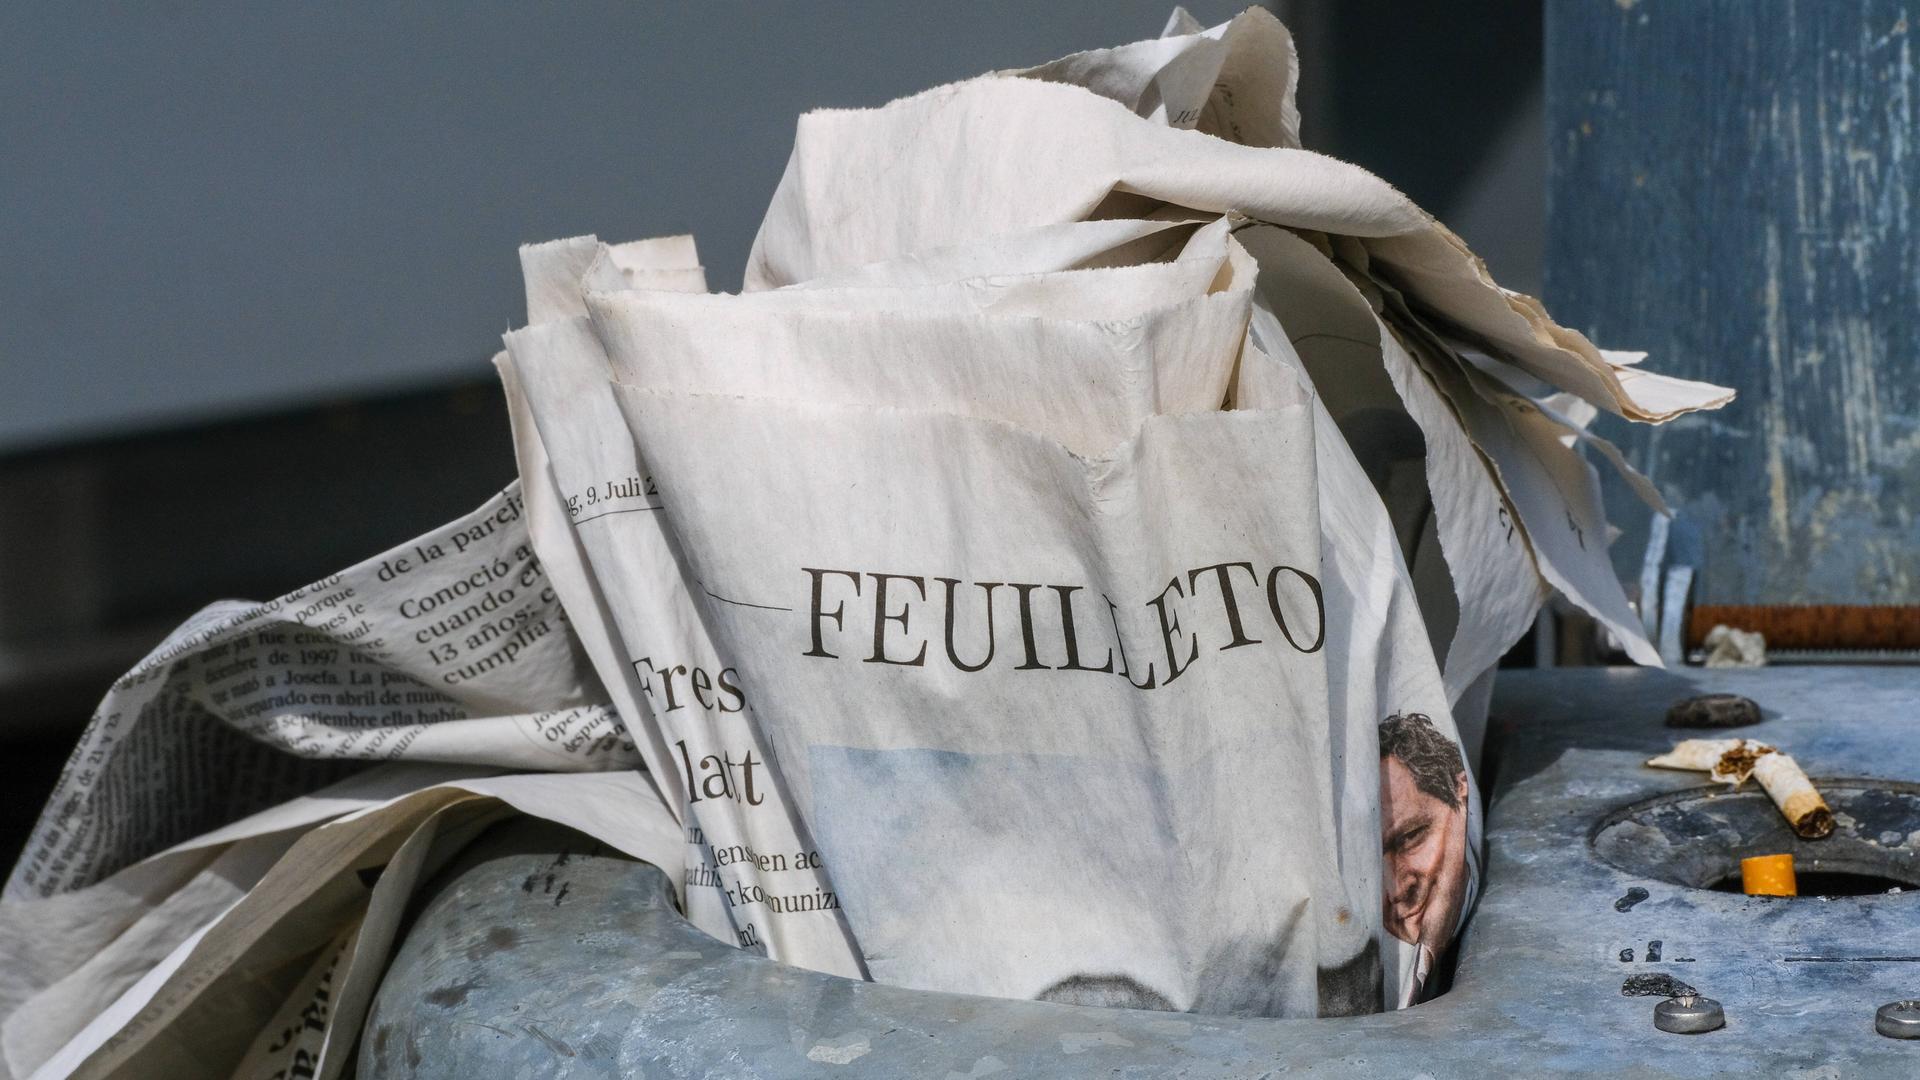 Eine gedruckte Zeitung steckt im Mülleimer einer Haltestelle. Aufgeschlagen ist das Feuilleton.